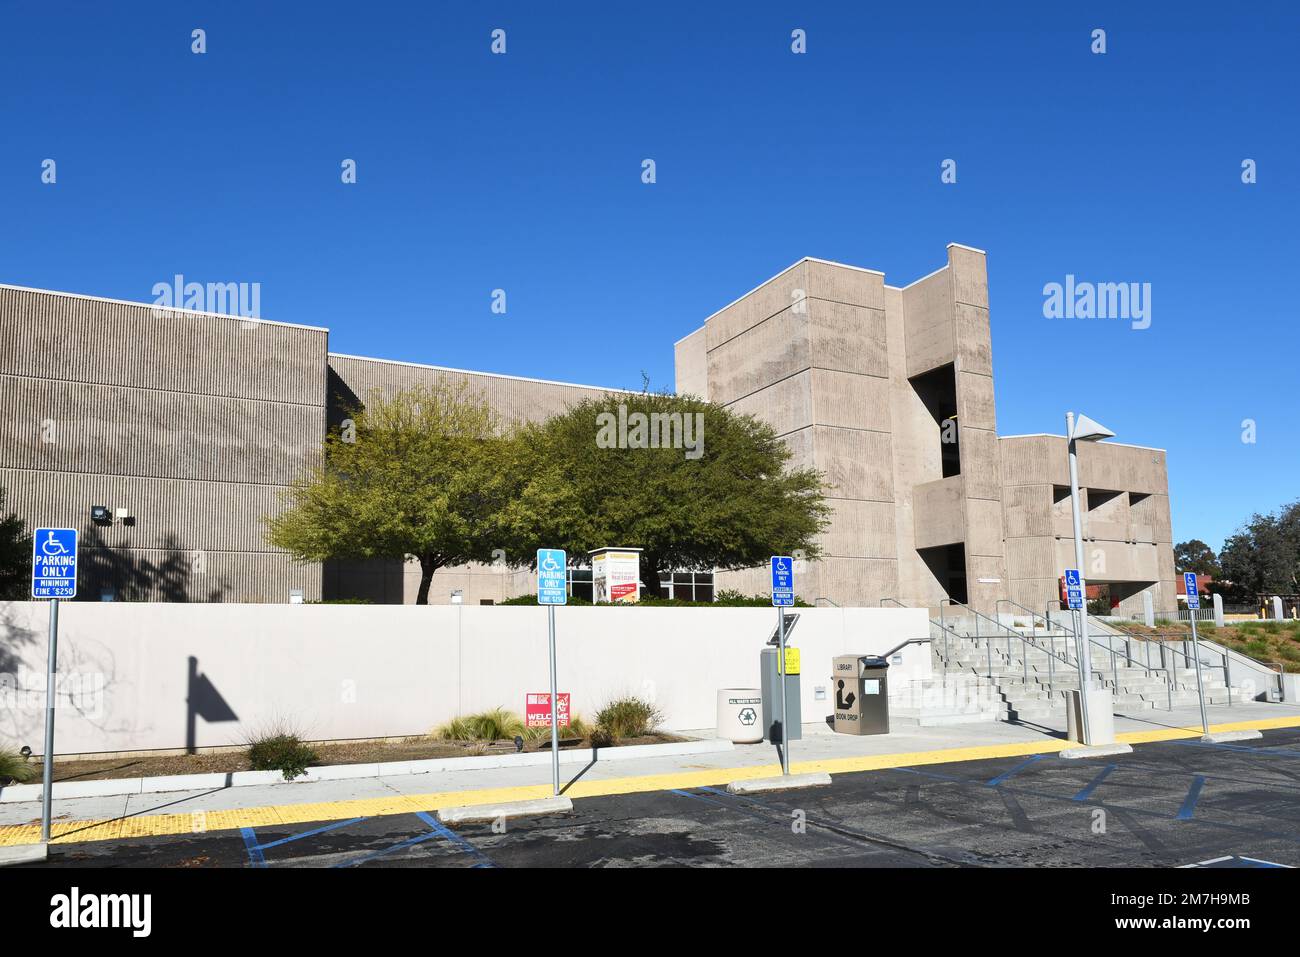 MISSION VIEJO, KALIFORNIEN - 8. JANUAR 2023: Library and Learning Resource Center vom Parkplatz auf dem Campus des Saddleback College aus gesehen. Stockfoto